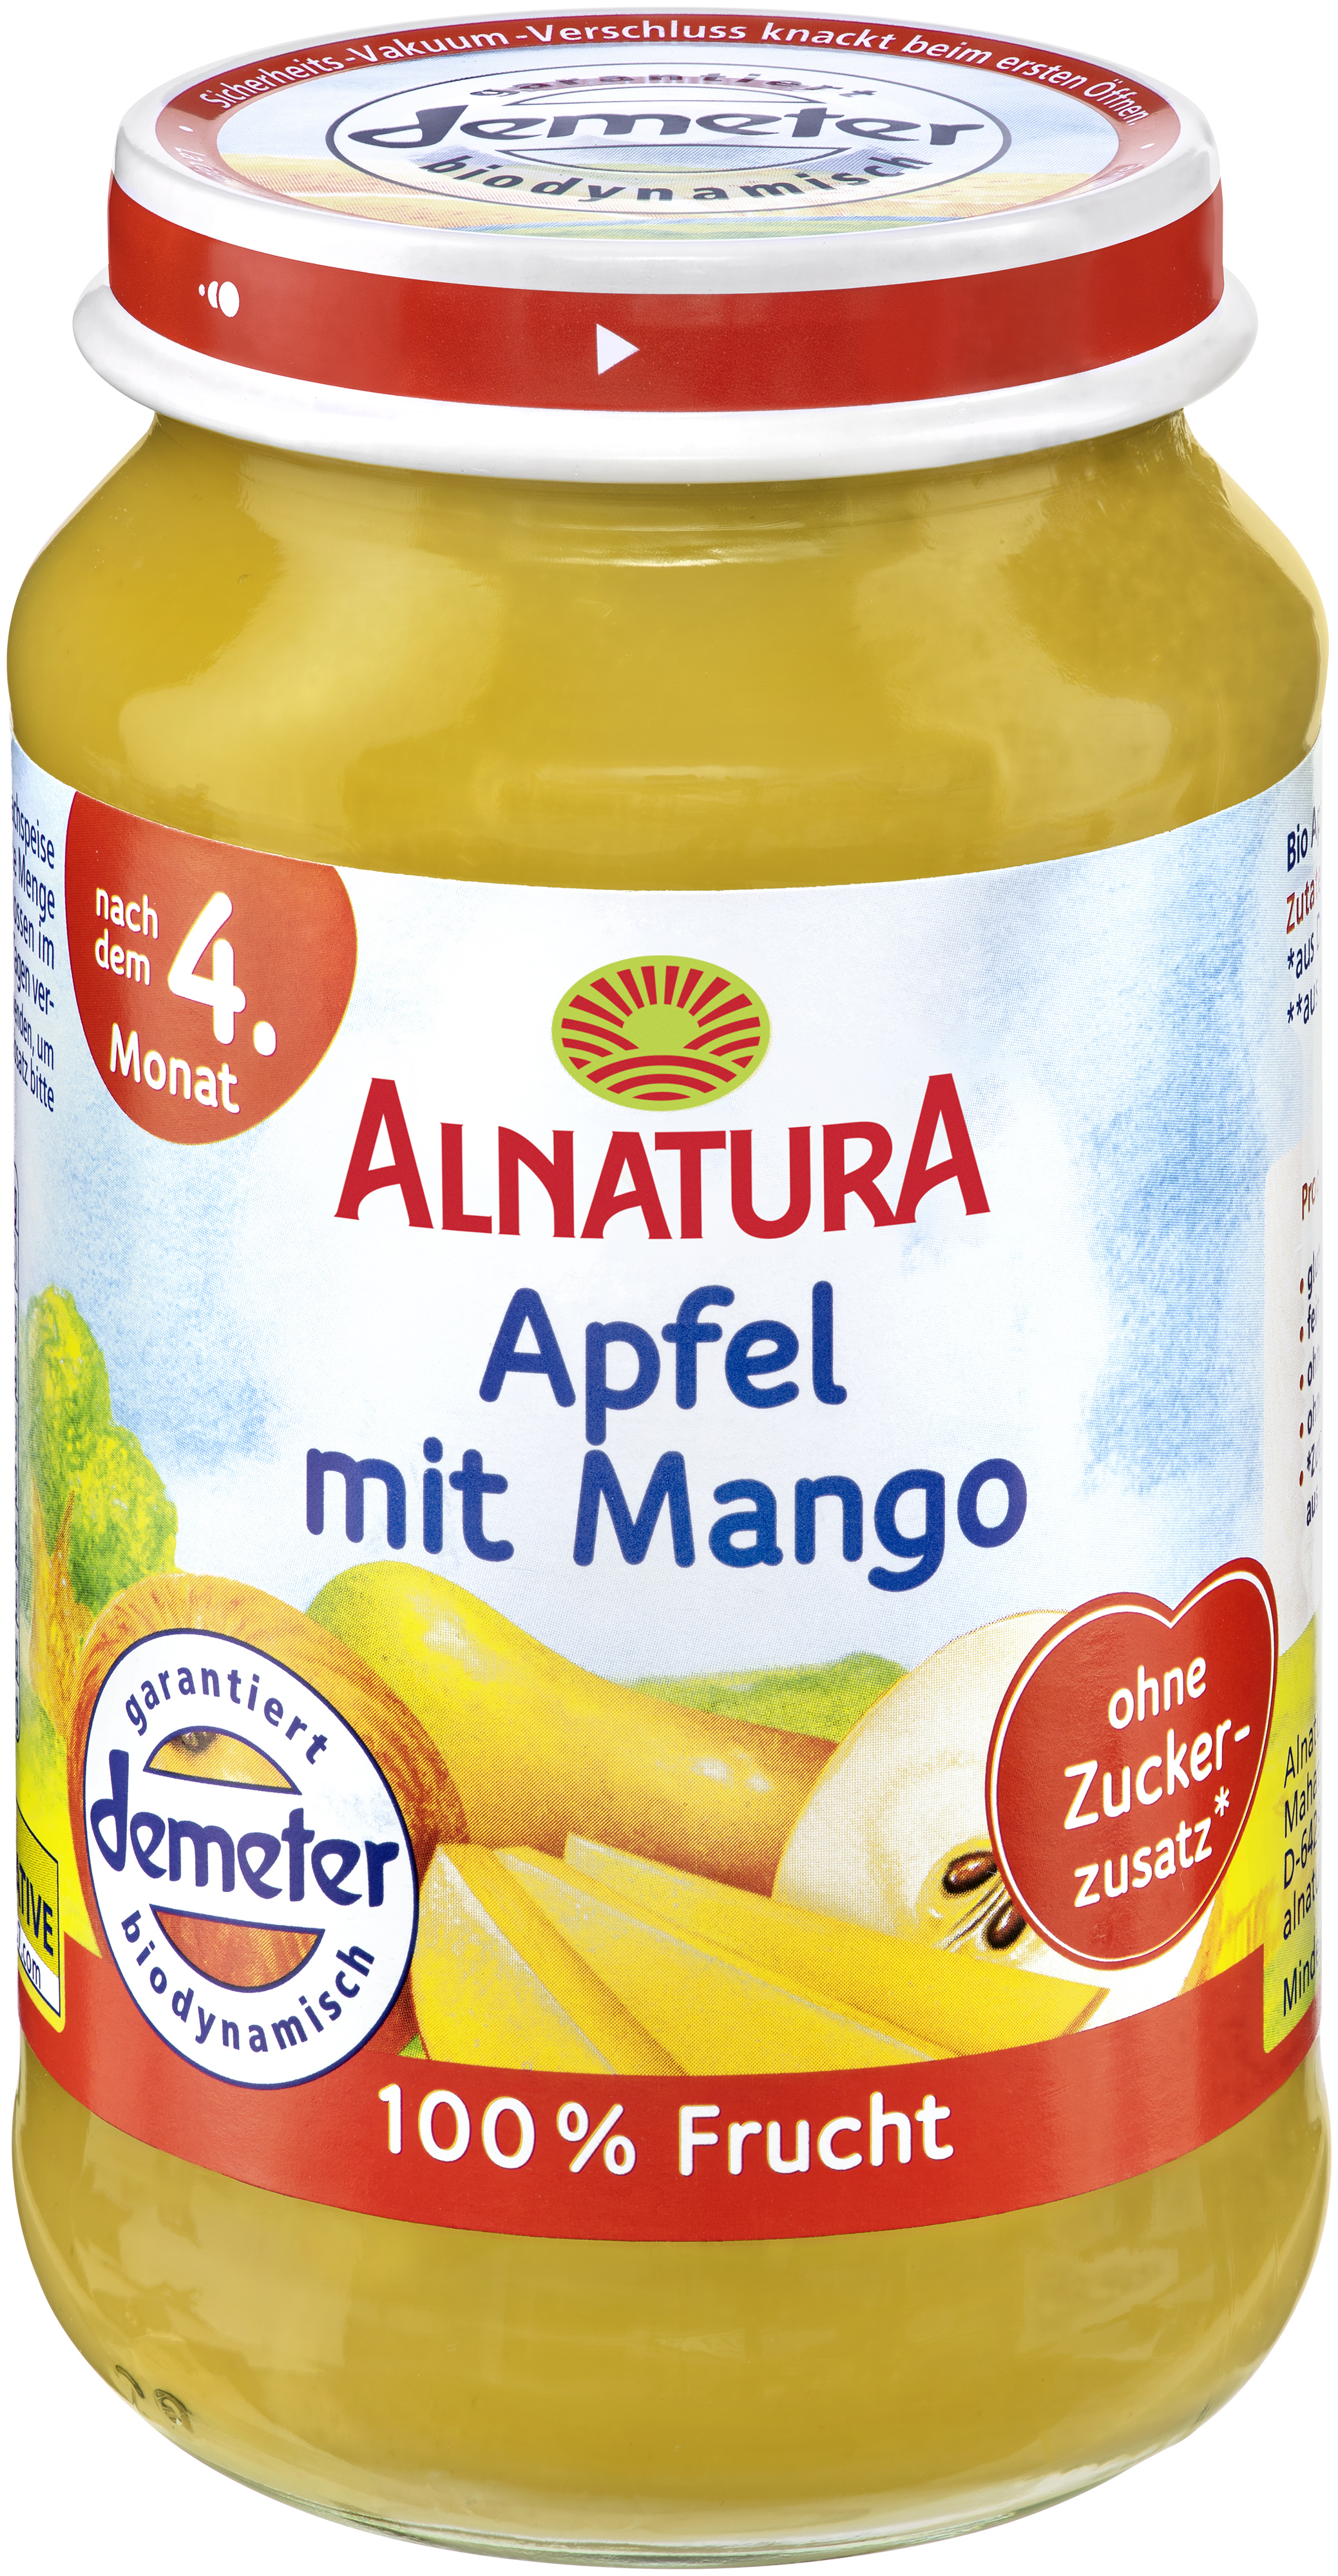 Apfel mit Mango (190 g) in Bio-Qualität von Alnatura